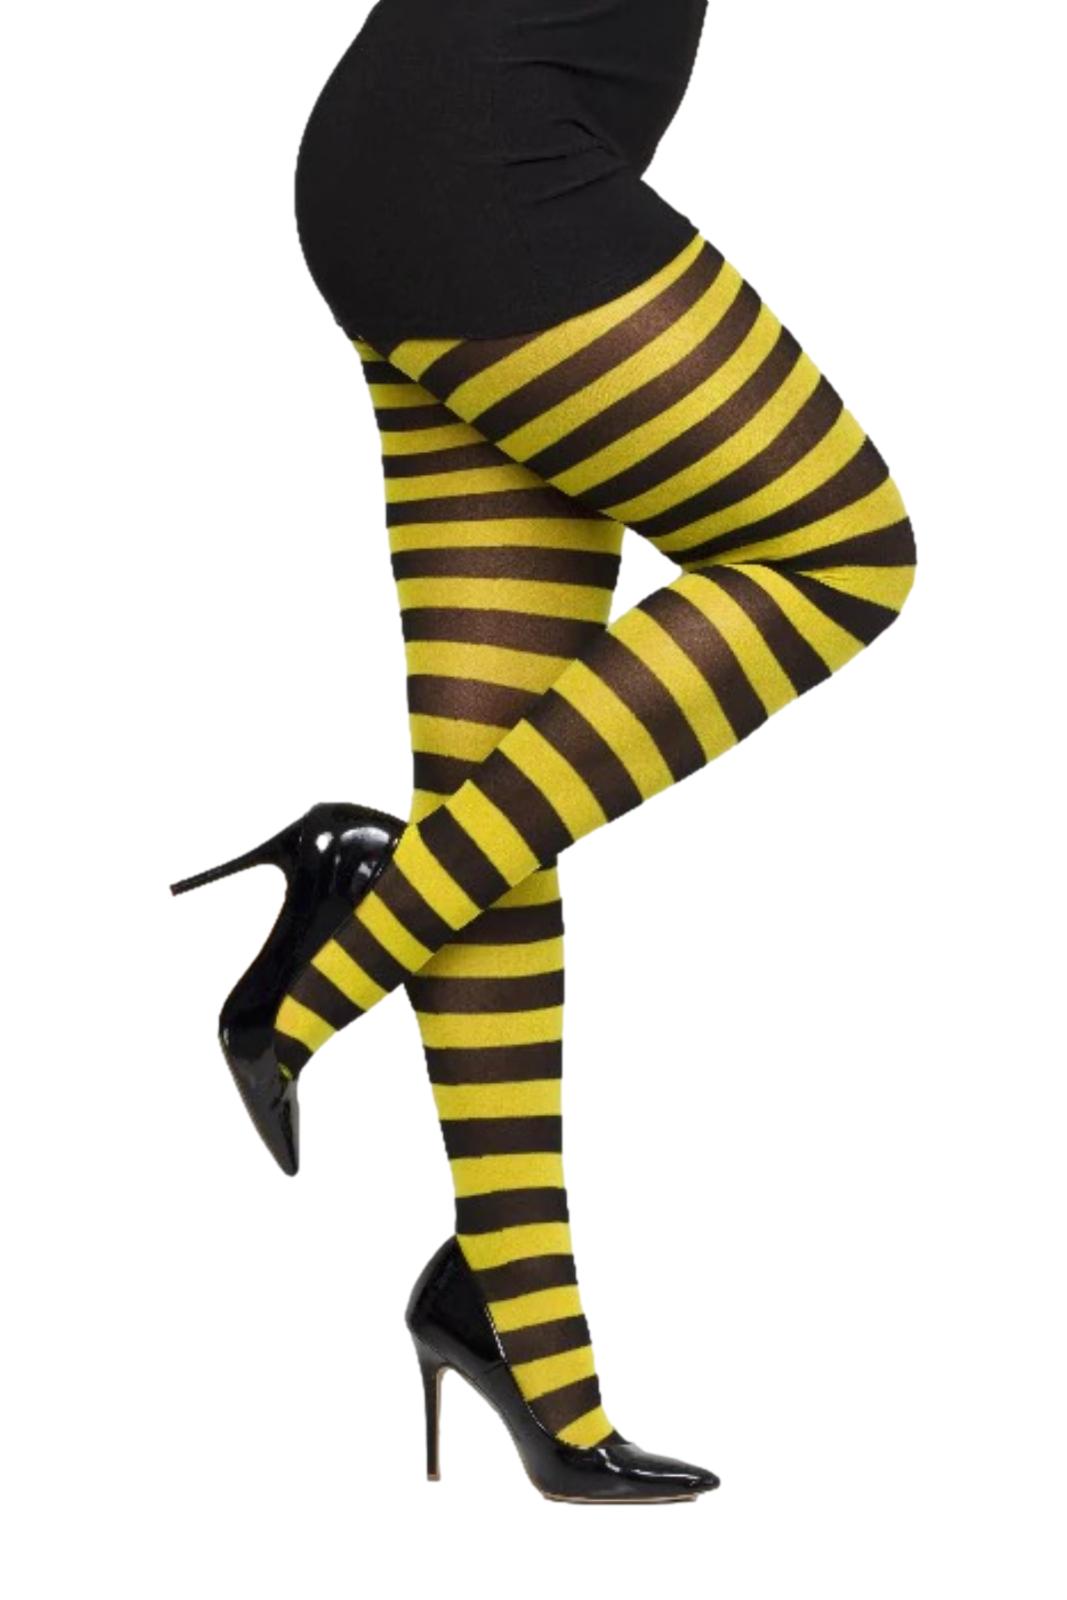 Pamela Mann Twickers Stripe Halloween Tights